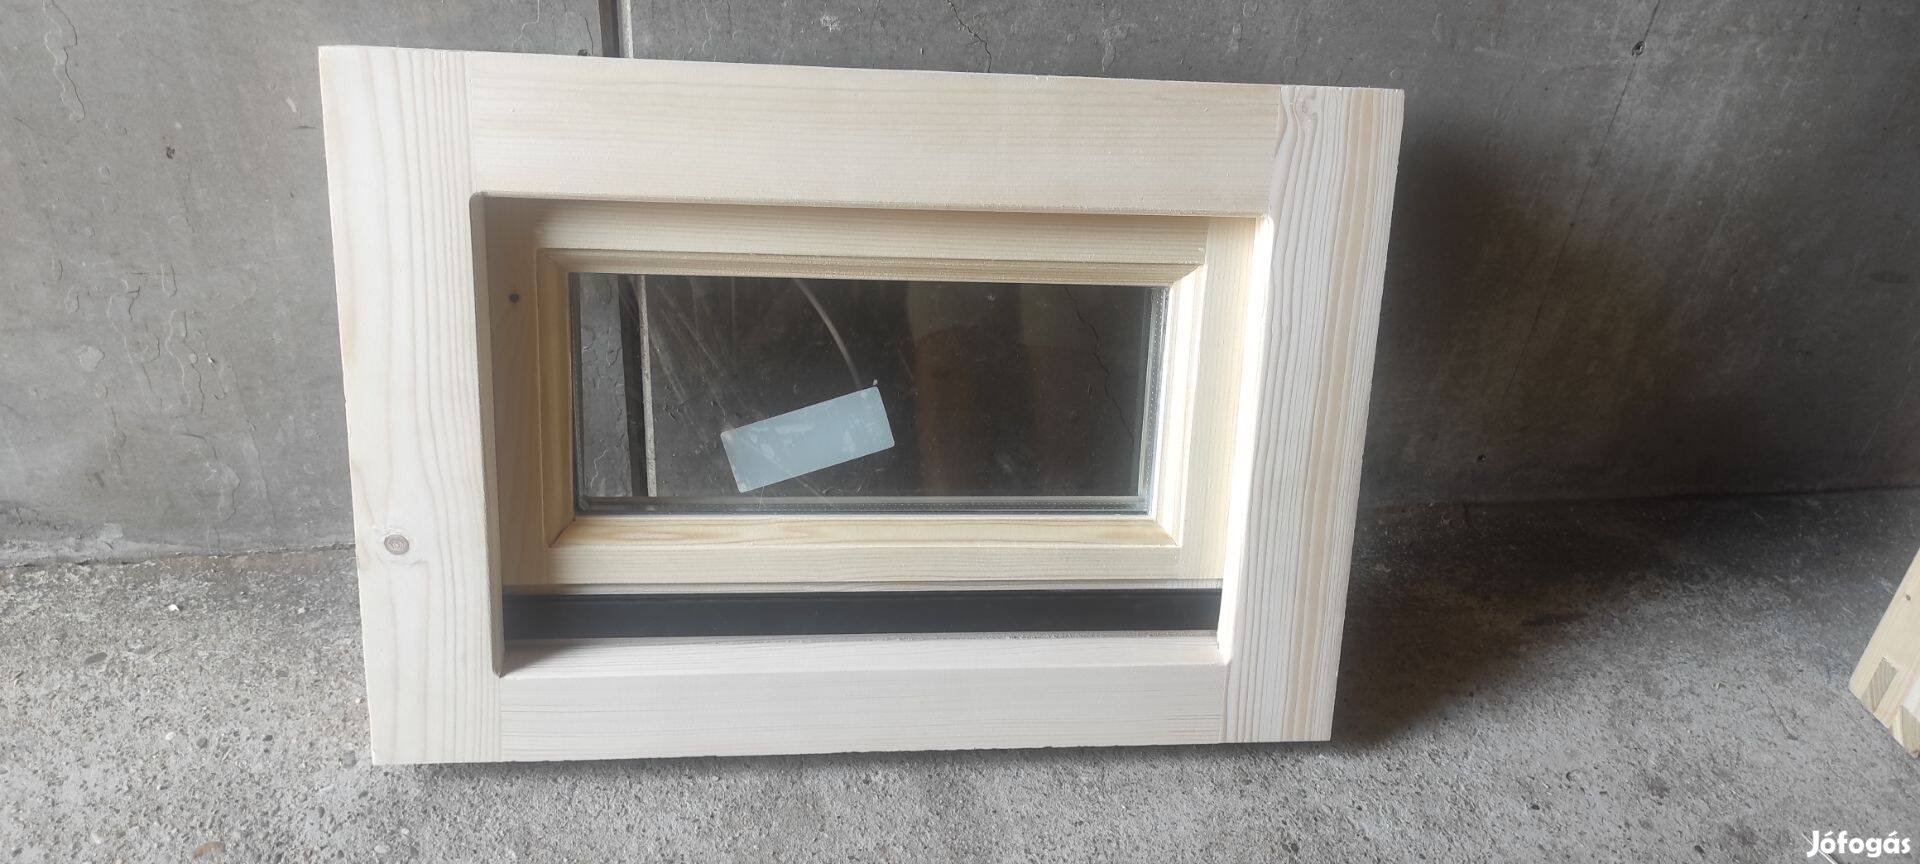 Eladó új fa ablak, tokméret 58x40 cm